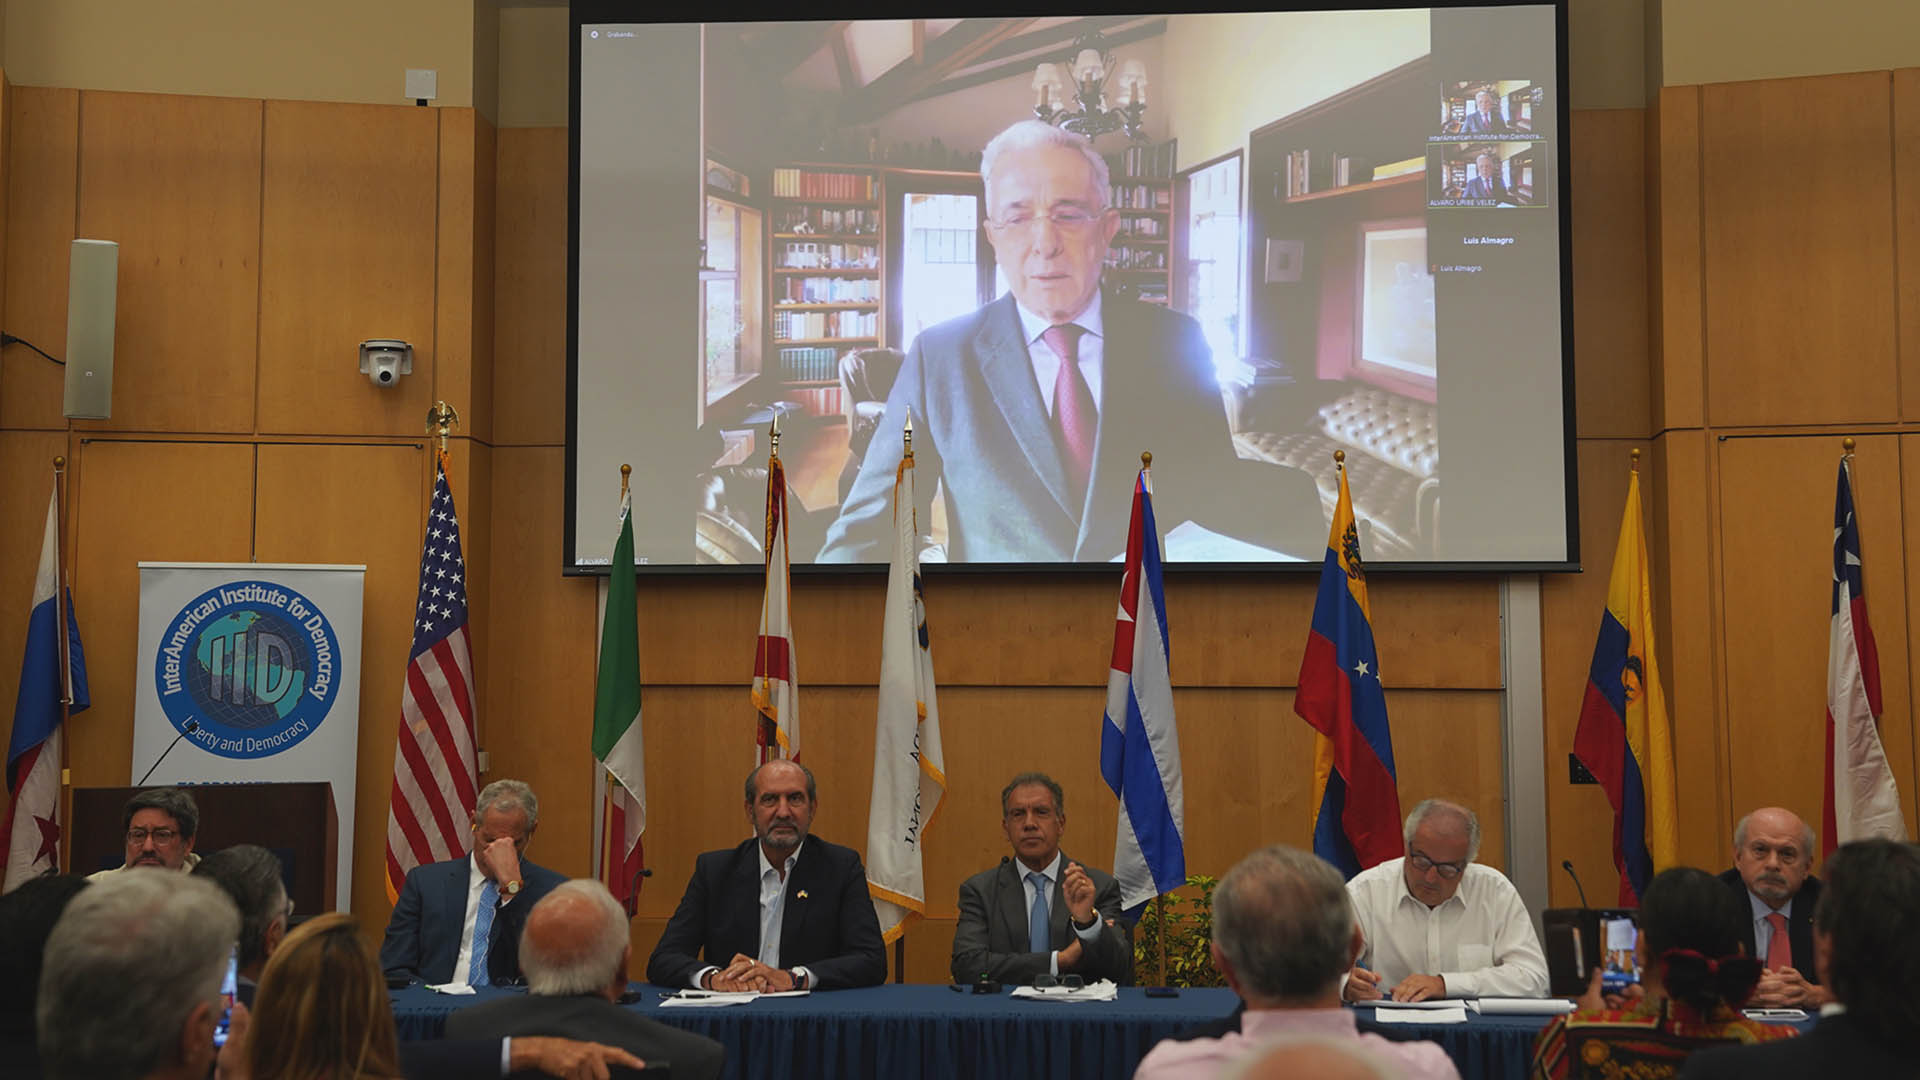 El ex presidente de Colombia, Álvaro Uribe, participó del foro "Derecha e izquierda en el Siglo XXI" (Nachomartinfilms)